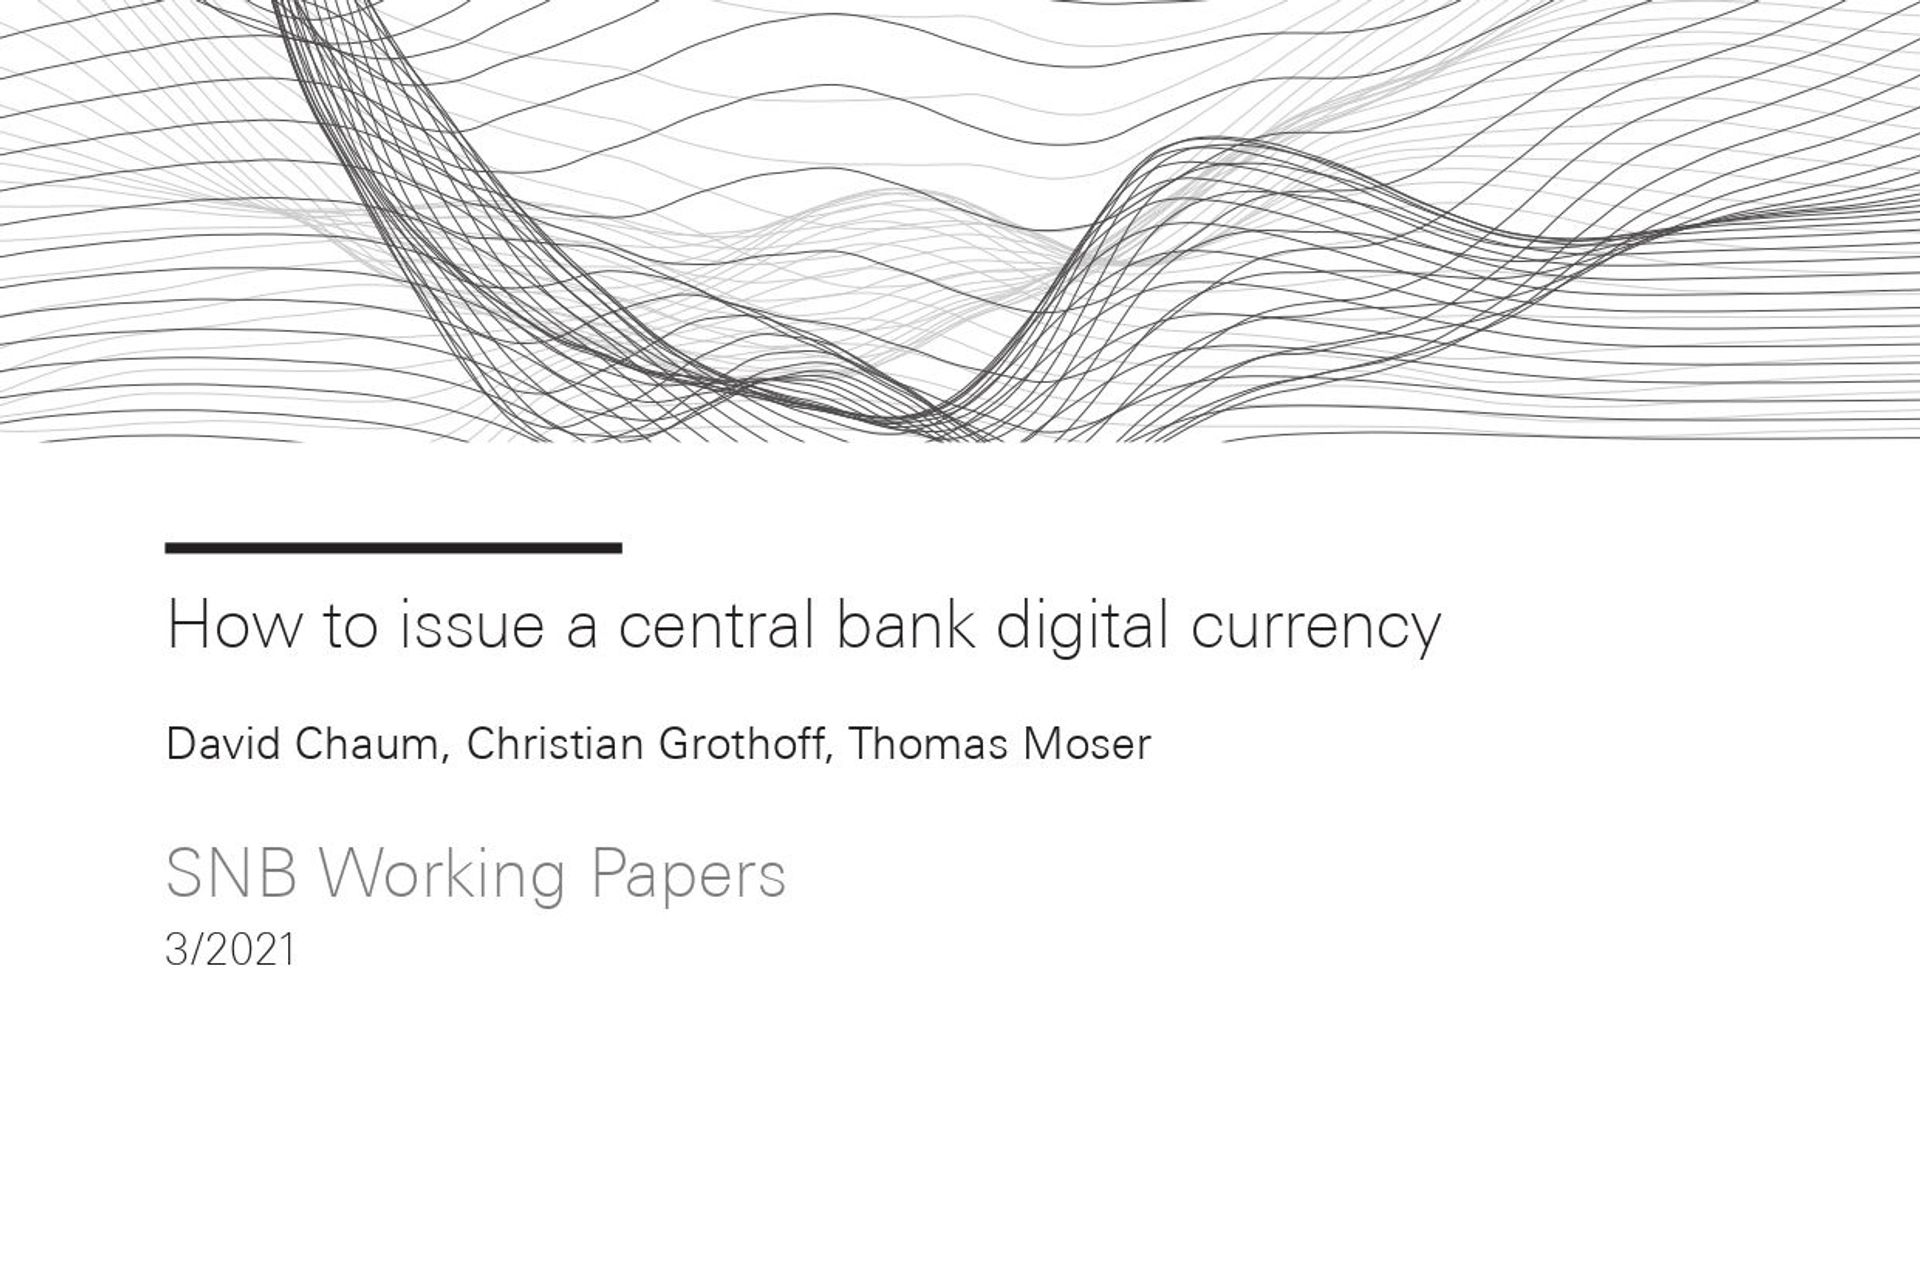 De omslag van het rapport "Hoe een digitale valuta van een centrale bank uitgeven"